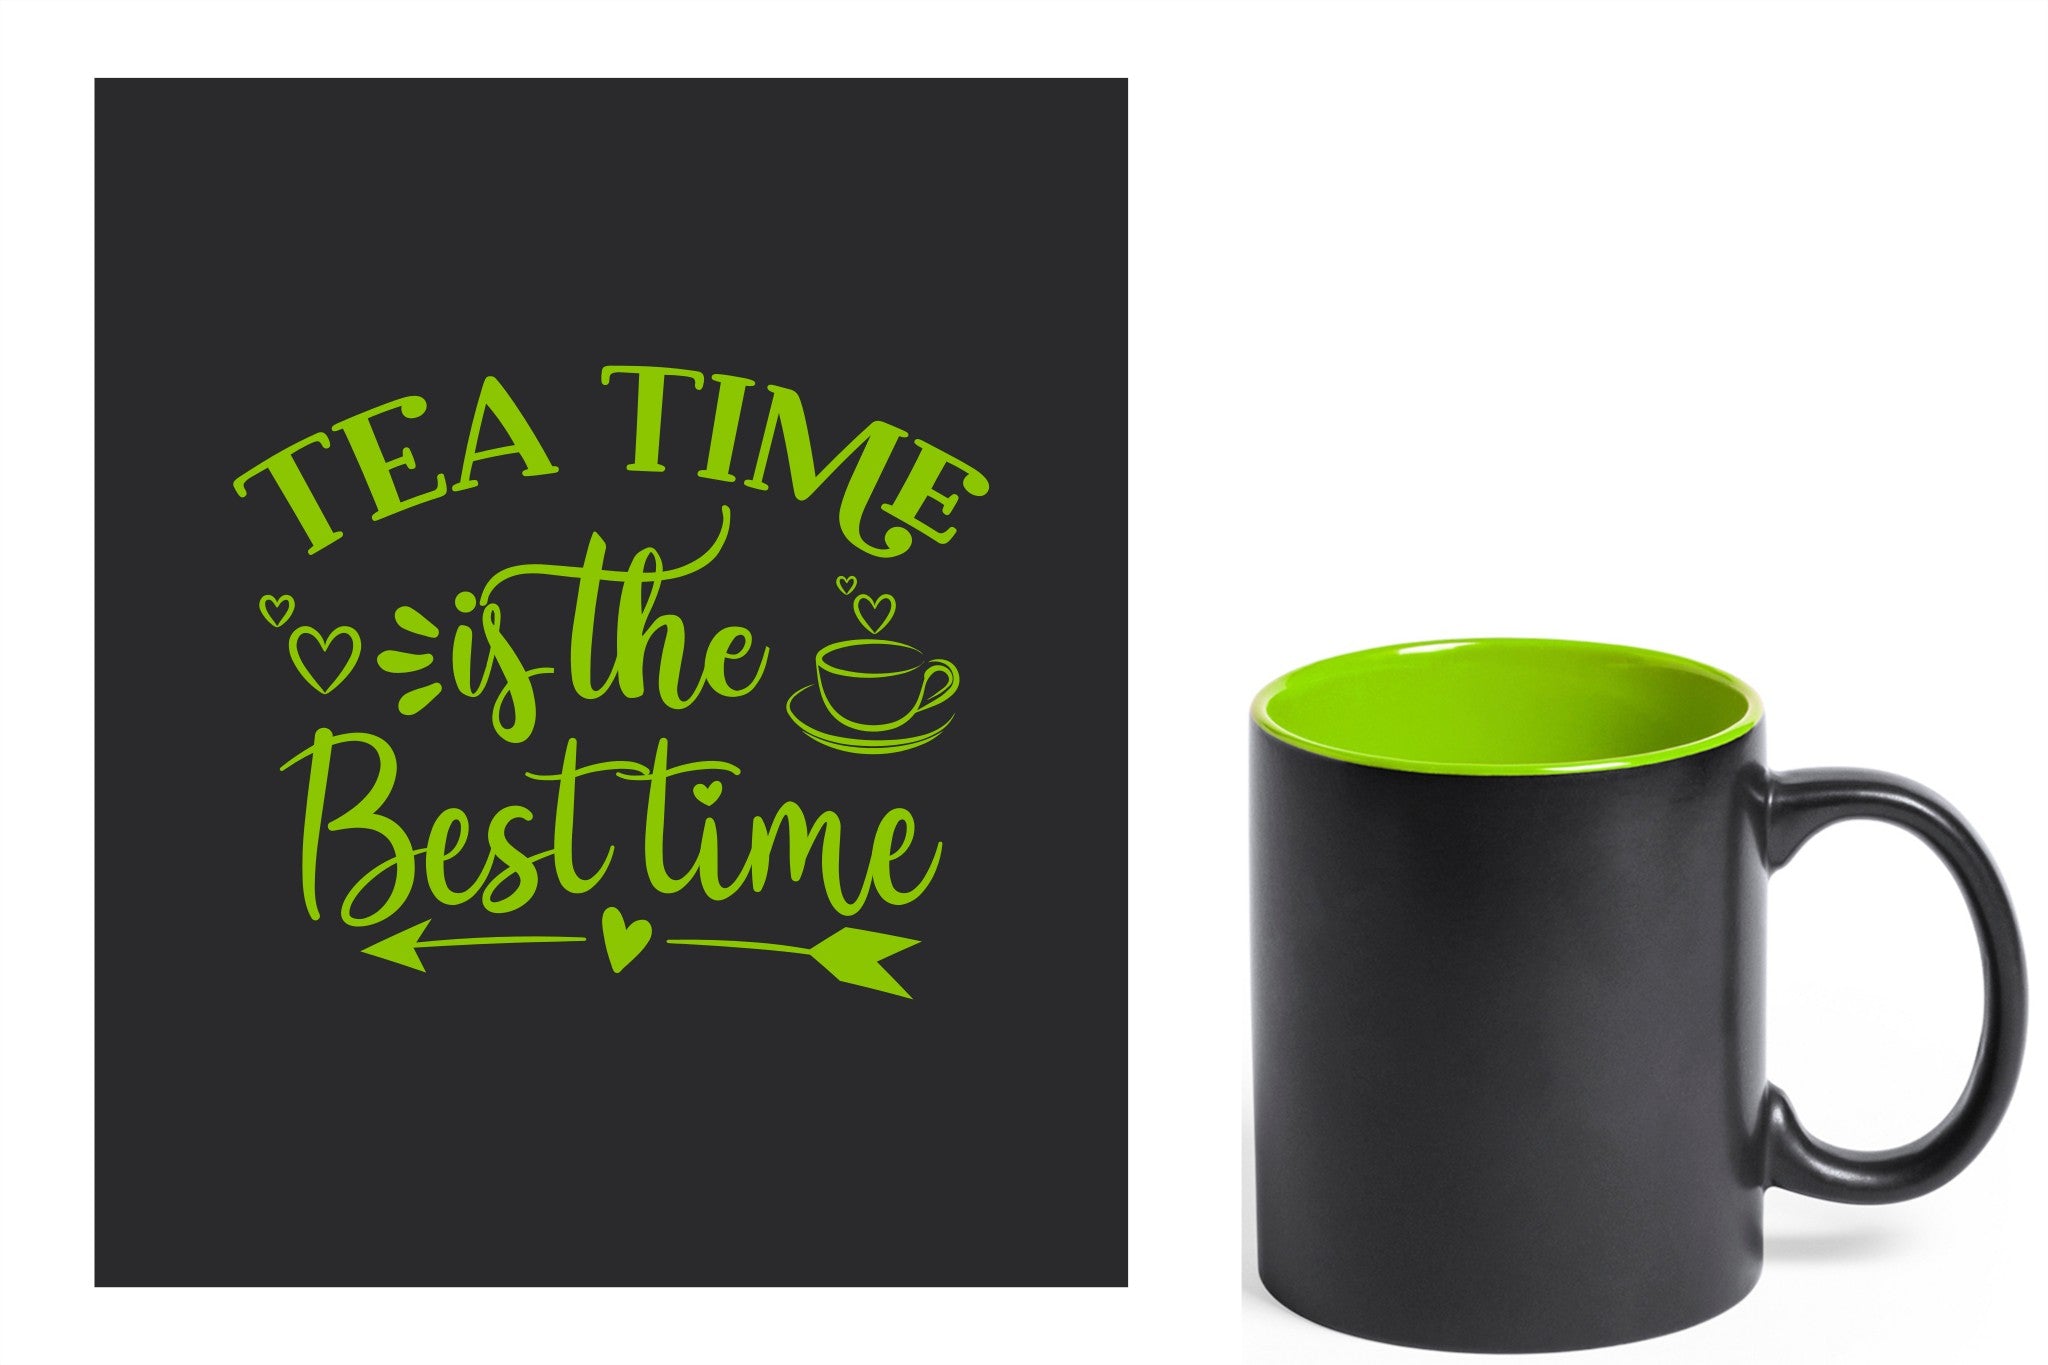 zwarte keramische mok met groene gravure  'Tea time is the best time'.